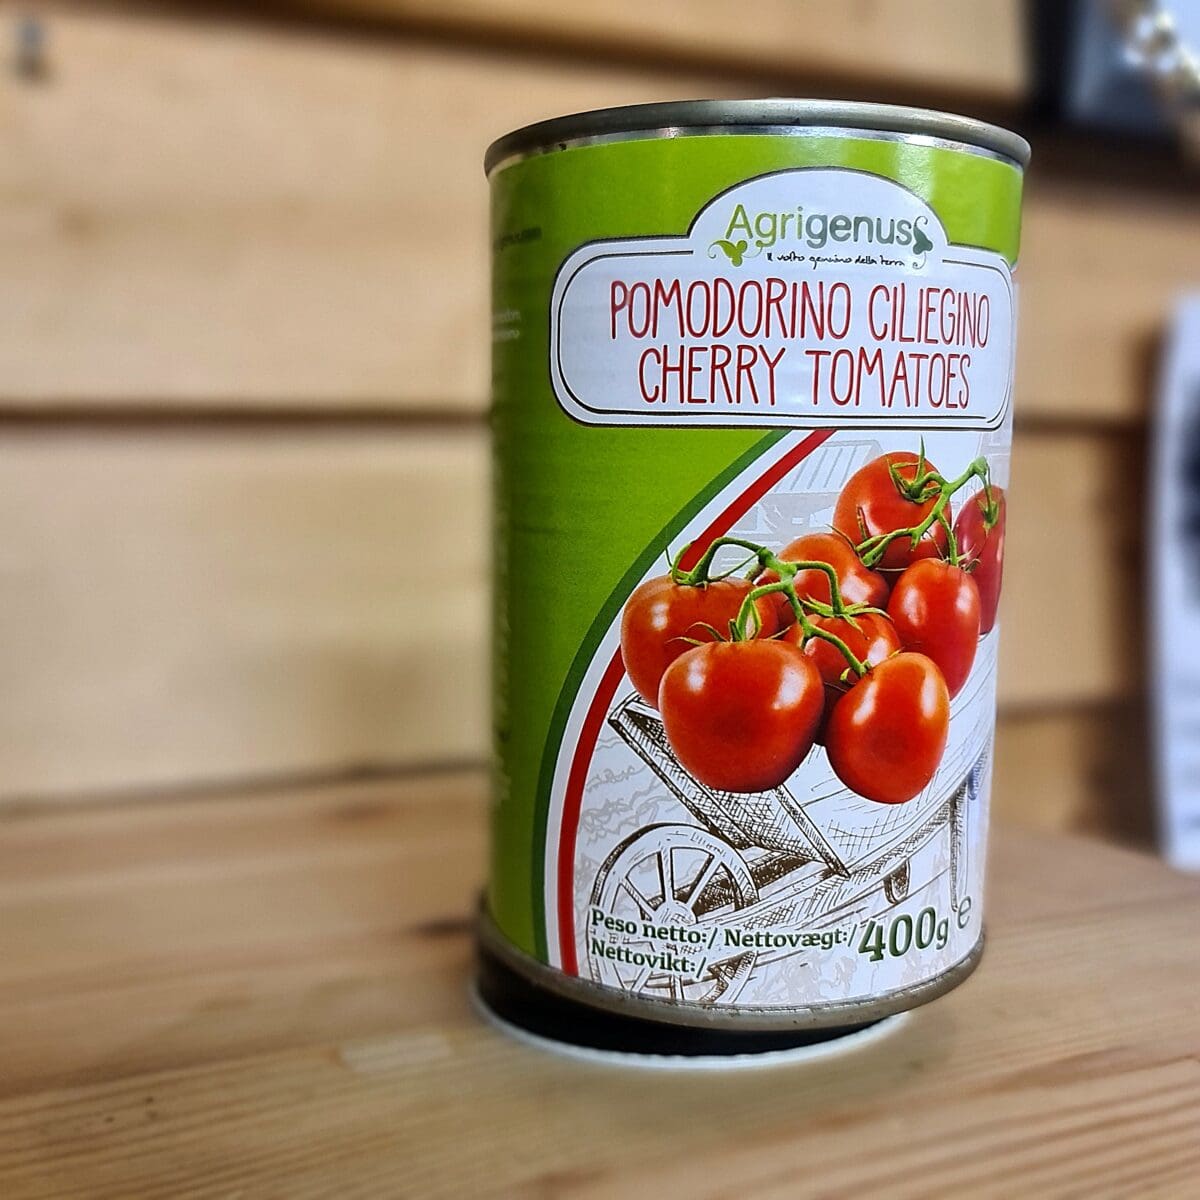 Pomodorin0 Ciliegino - Italienska körsbärstomater - fullmogna och söta tomater odlade i vulkanjord vid Vesuvius Körsbärstomater från italien som växer i den bördiga jorden nedanför Vesuvio´s sluttning. En delikat tomat som skördas fullmogna under tidiga hösten. Denna tomat är den perfekta grunden till en vällagad tomat och pastasås, tomatsoppa eller "salsa per pizza". Körsbärstomaterna i denna konserv ligger i sin egna saft och endast en liten mängd salt är tillförd - resten är upp till dig capo! Innehållsförteckning: Körsbärstomater, tomatjuice och salt Bäst före se burken Näringsinnehåll per 100gram Energi kcal 22Kcal Fett(g) 0,5 (varav mättat 0,0) Kolhydrater (g) 3 (varav sockerarter 3) Protein (g) 1,2 Salt: 0,22g Nettovikt: 400 gram Att göra pizza på grillen är en fröjd för alla sinnen. Testa att lägga med ett par bitar av olivträ eller annat trä för att skapa både varmare klimat och godare doft. Torrt trä brinner hetare än både kol och briketter. Vill du inte använda trä i din grill så bör du vara noga med att använda en kolsort som klarar att bära iväg hettan en bit över 300 grader, gärna runt 350 grader. BBQmonster rekommenderar  Best Charcoal Ek och Björk - kol som kan leverera riktigt höga temperaturer och ändå förbli stabil utan gnistor och sprätt. Vill du smaksätta såsen med en god olivolja så spana in BBQmonsters Chiliolja och Tryffelolja av fin italiensk olivolja, naturligt smaksatt.